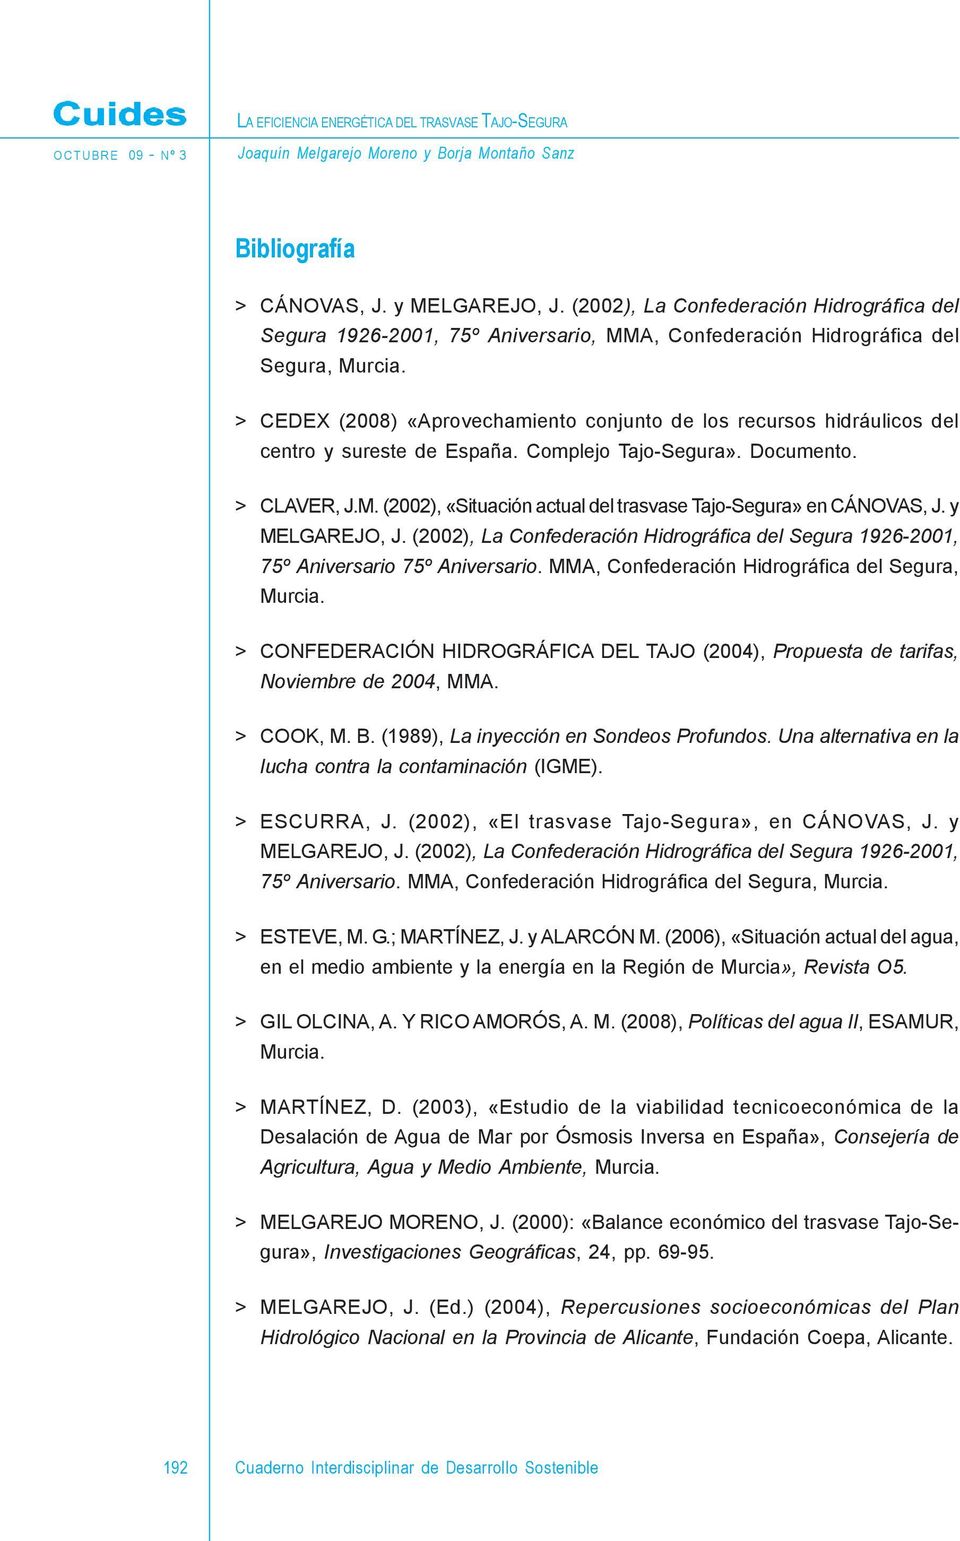 > CEDEX (2008) «Aprovechamiento conjunto de los recursos hidráulicos del centro y sureste de España. Complejo Tajo-Segura». Documento. > CLAVER, J.M.